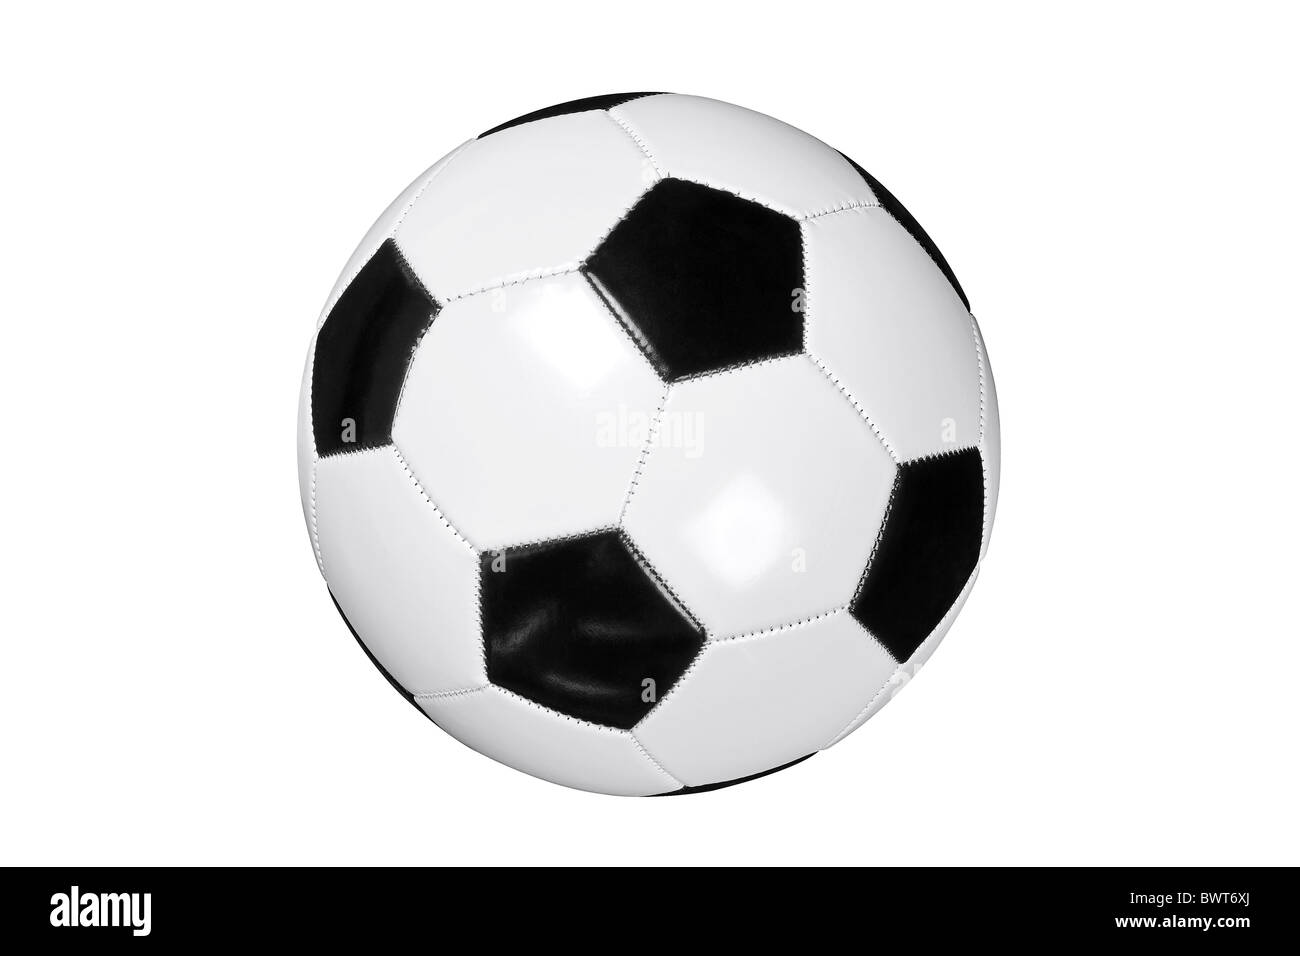 Photo de football en cuir blanc et noir ou ballon de soccer isolé sur fond blanc avec clipping path fait avec l'outil Stylo. Banque D'Images